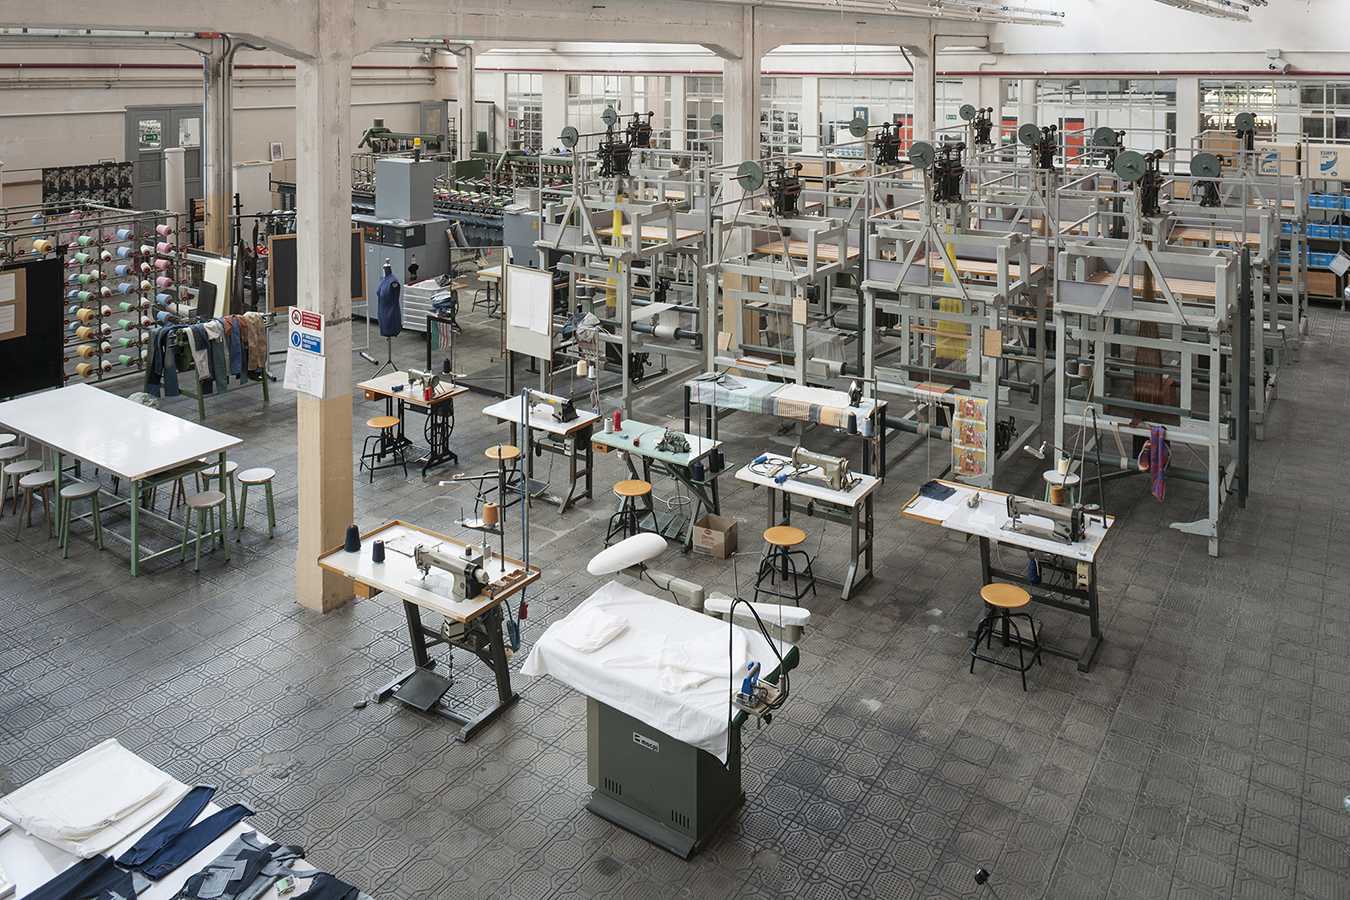 Laboratorio di tessitura dell’Istituto Tecnico Industriale “V. E. Marzotto” di Valdagno © Francesco de Luca